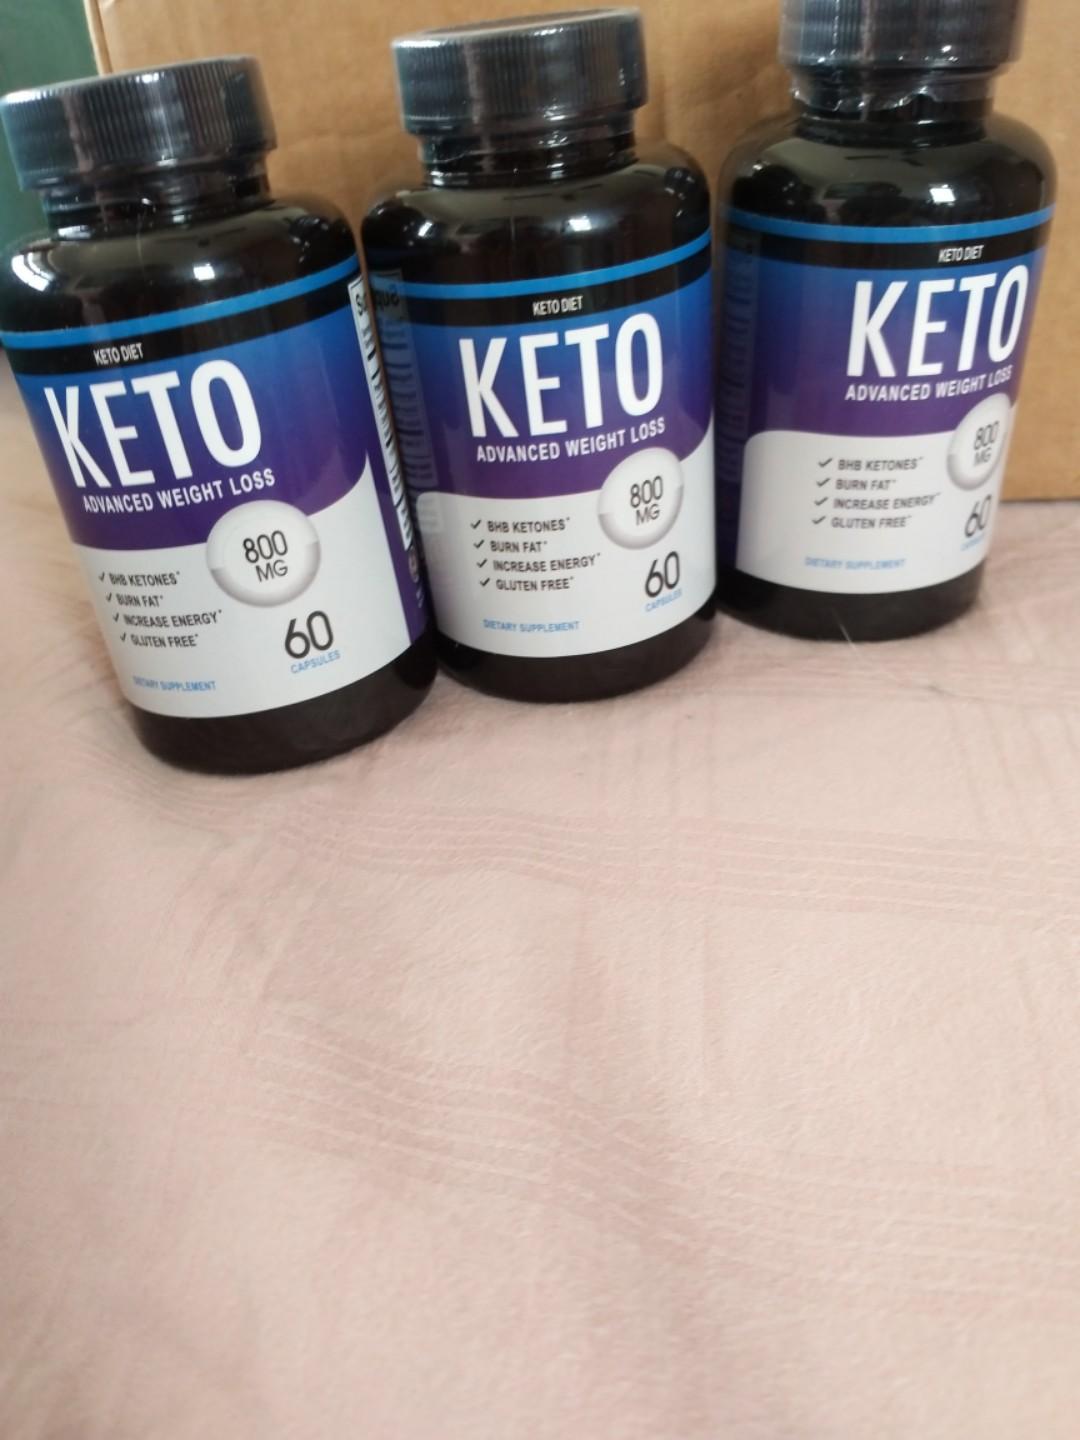 keto advanced weight loss 800 mg reviews